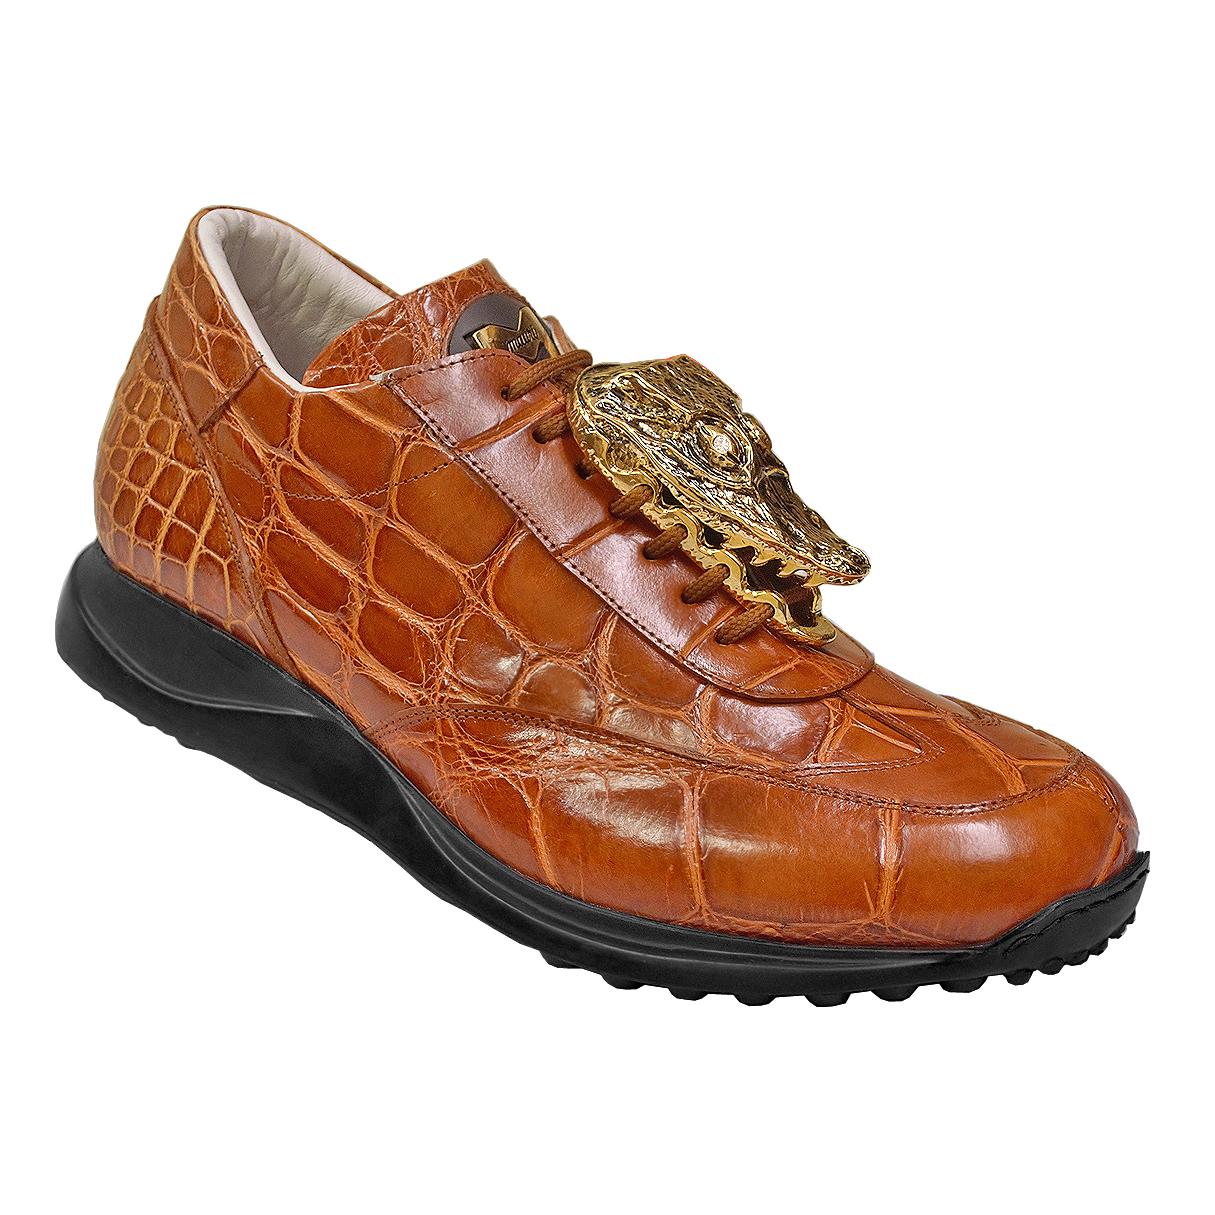 Uitroepteken deugd Reizen Mauri "Lusso" Brown Alligator Leather Sneakers | Upscale Menswear